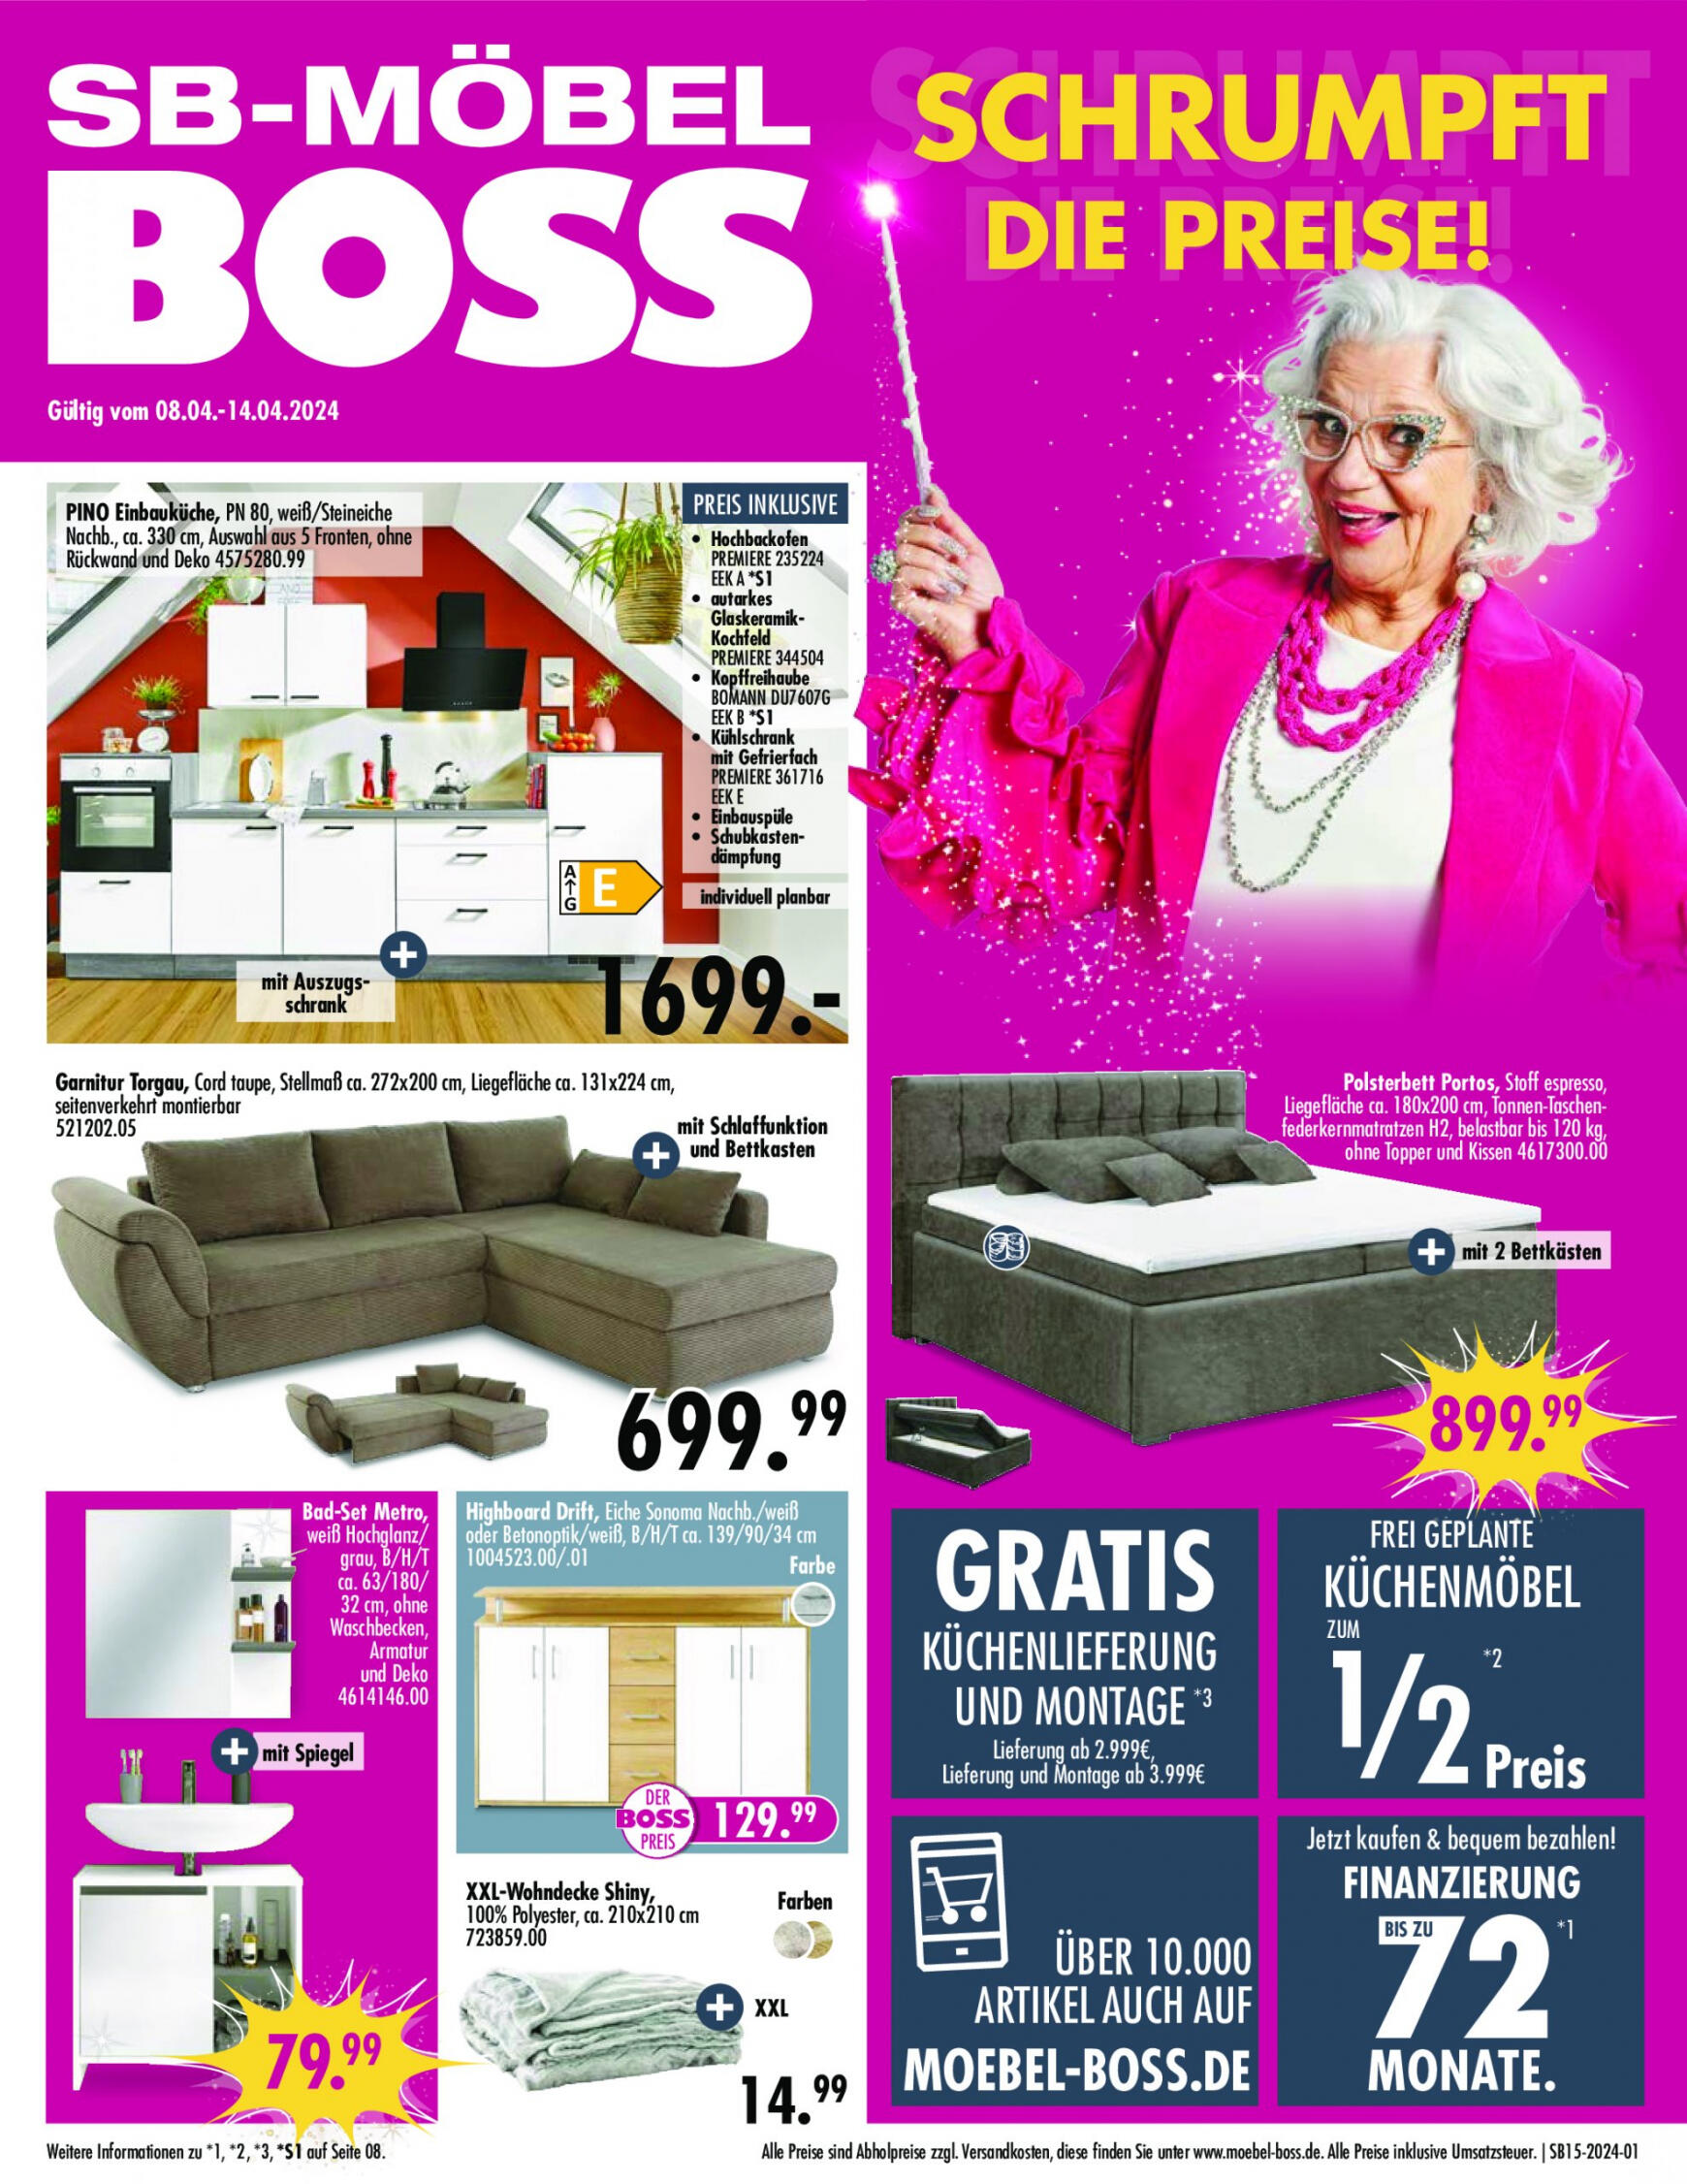 moebel-boss - Flyer SB Möbel BOSS aktuell 08.04. - 14.04. - page: 1